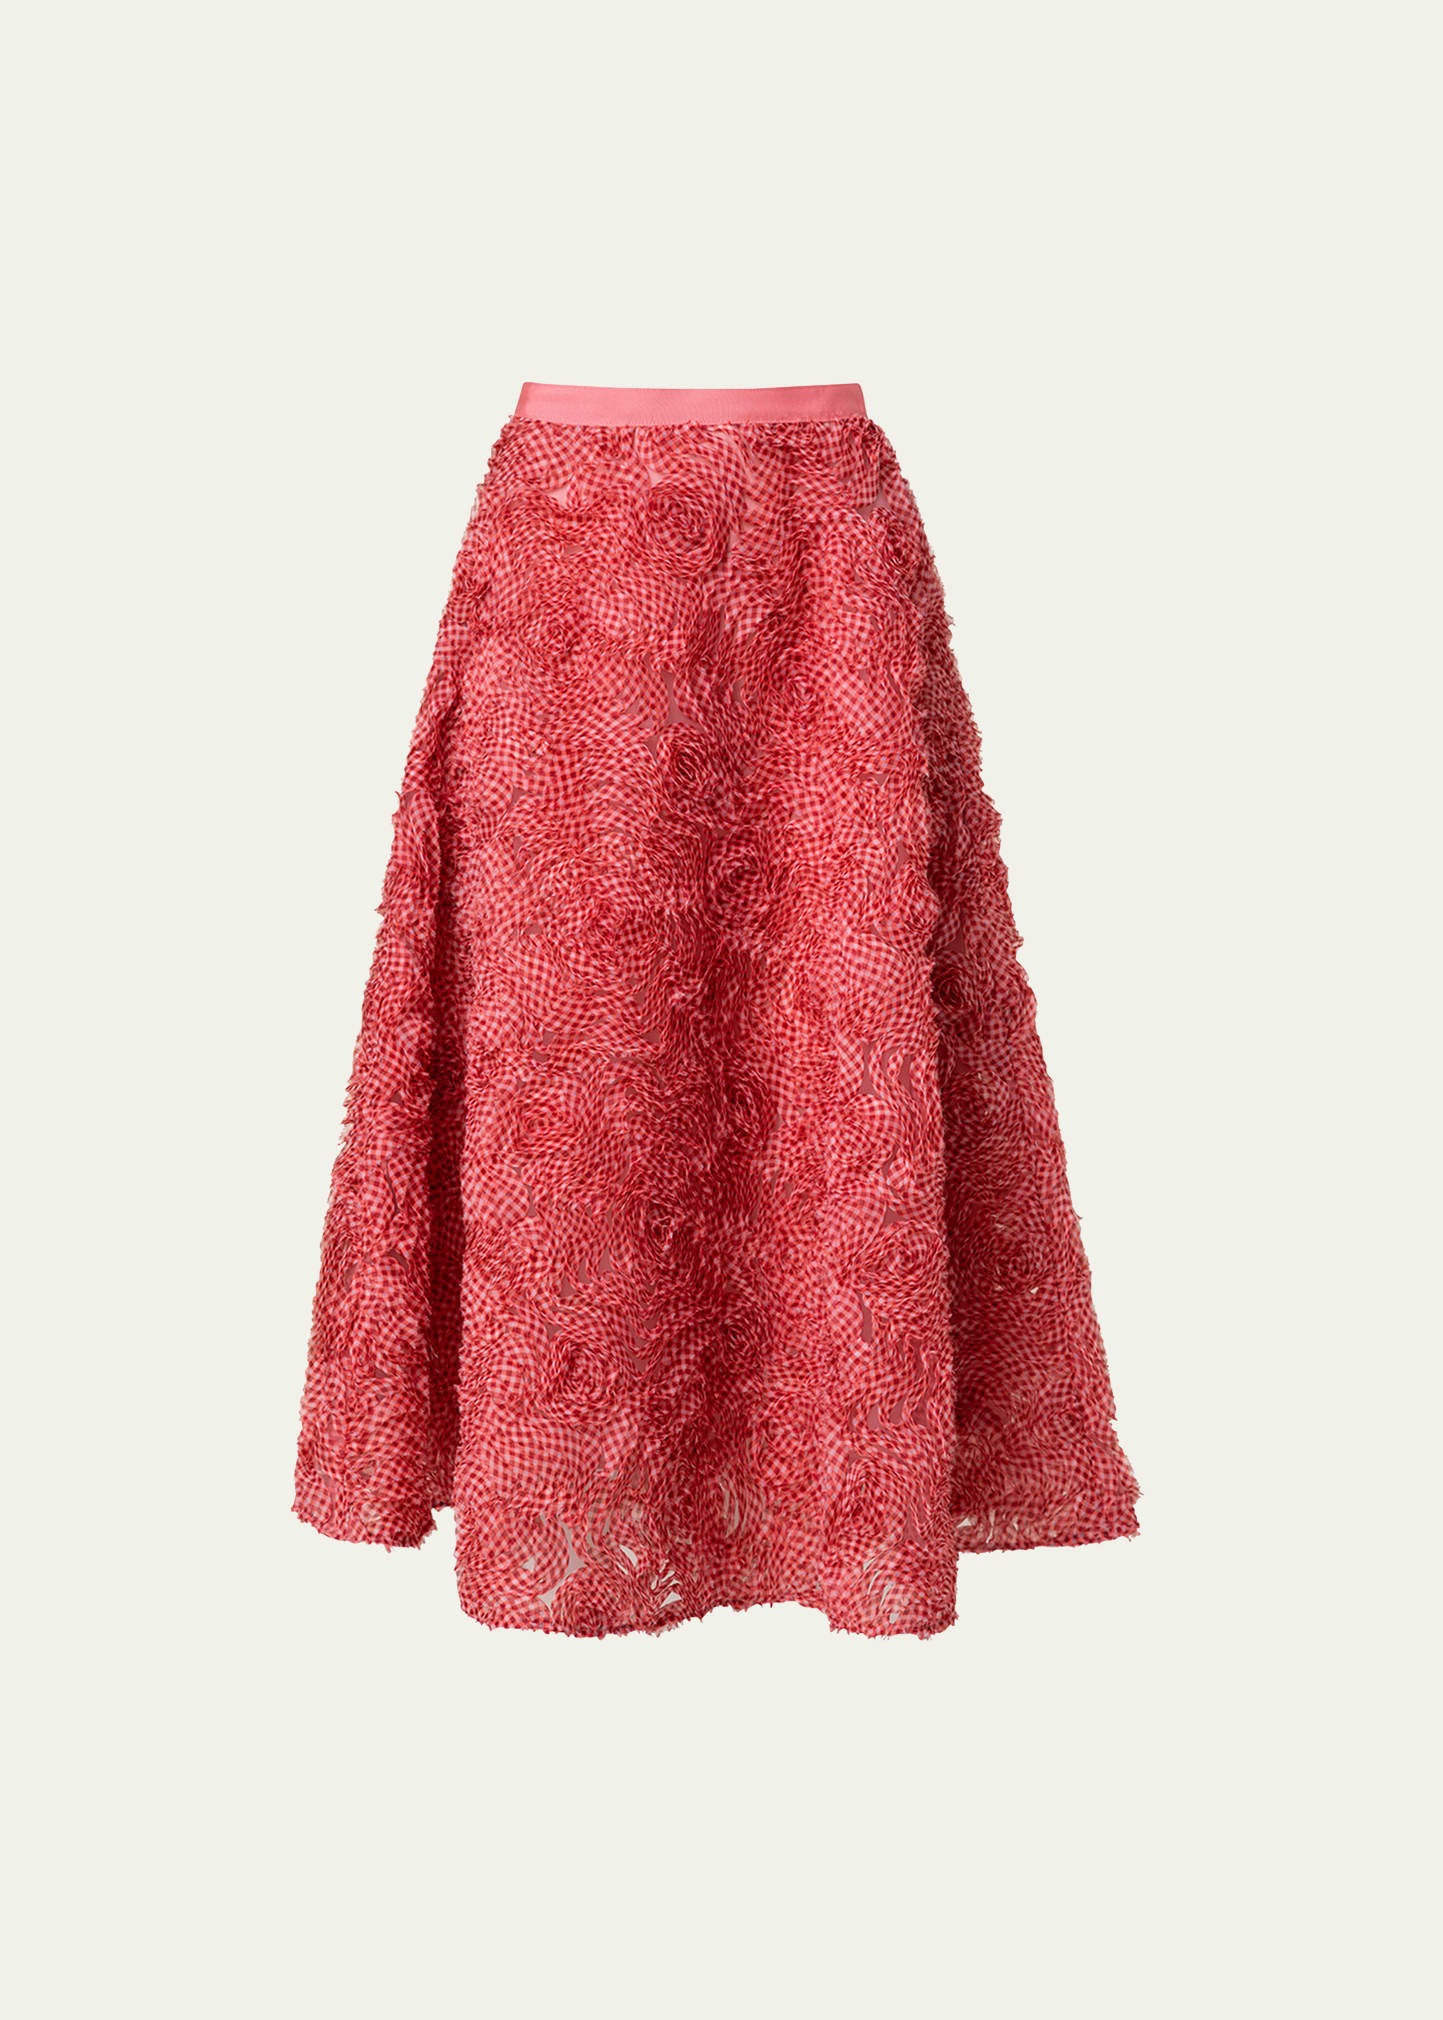 Gingham Organdy Rosette Applique Tulle Midi Skirt